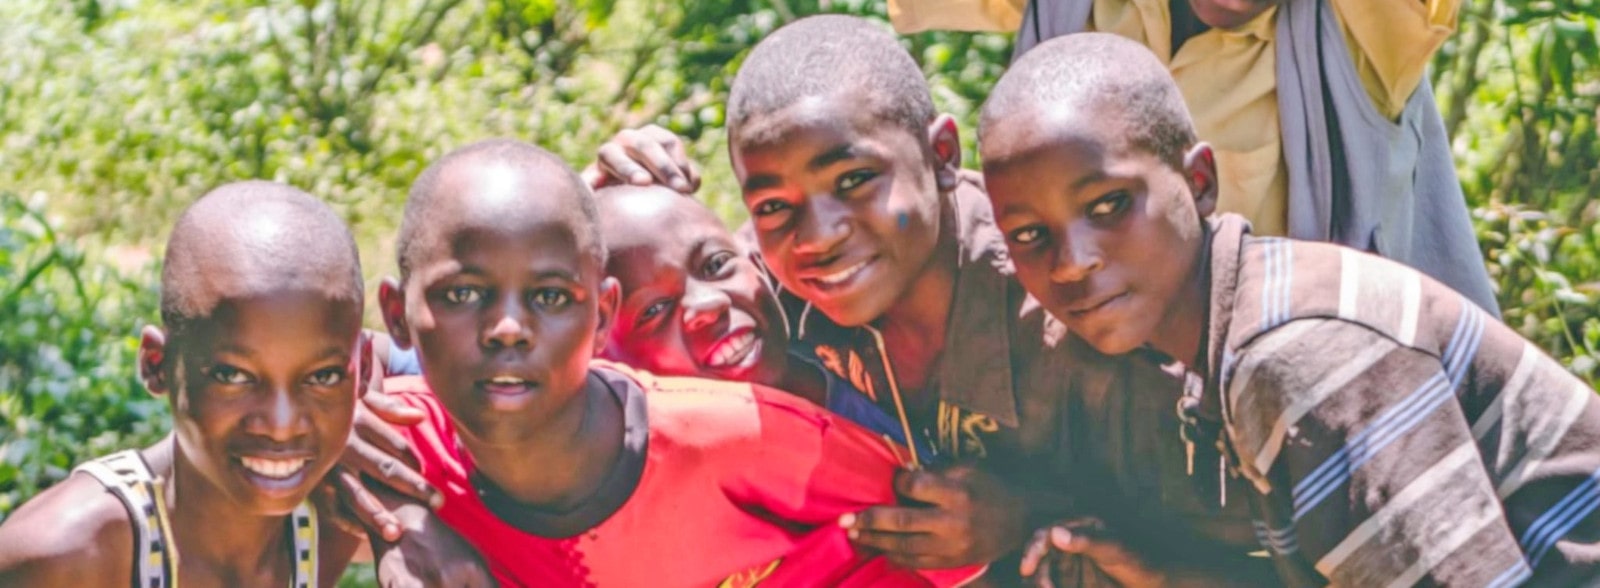 Föhliche Teenies, Kinderdorf Kinyo, Uganda